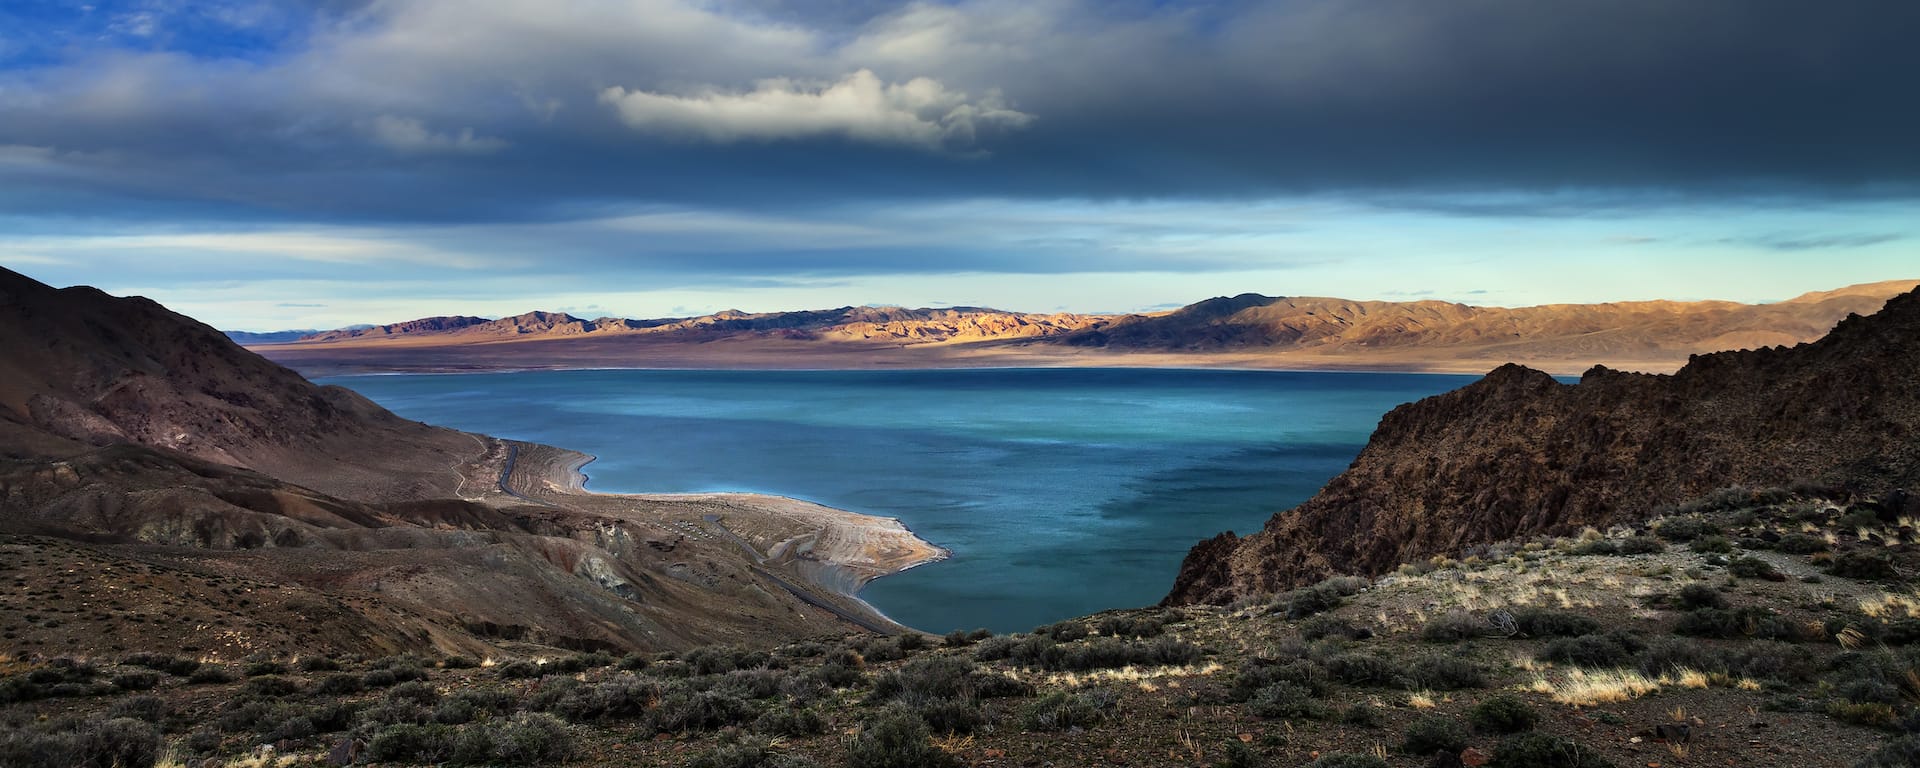 A beautiful lake in Northern Nevada